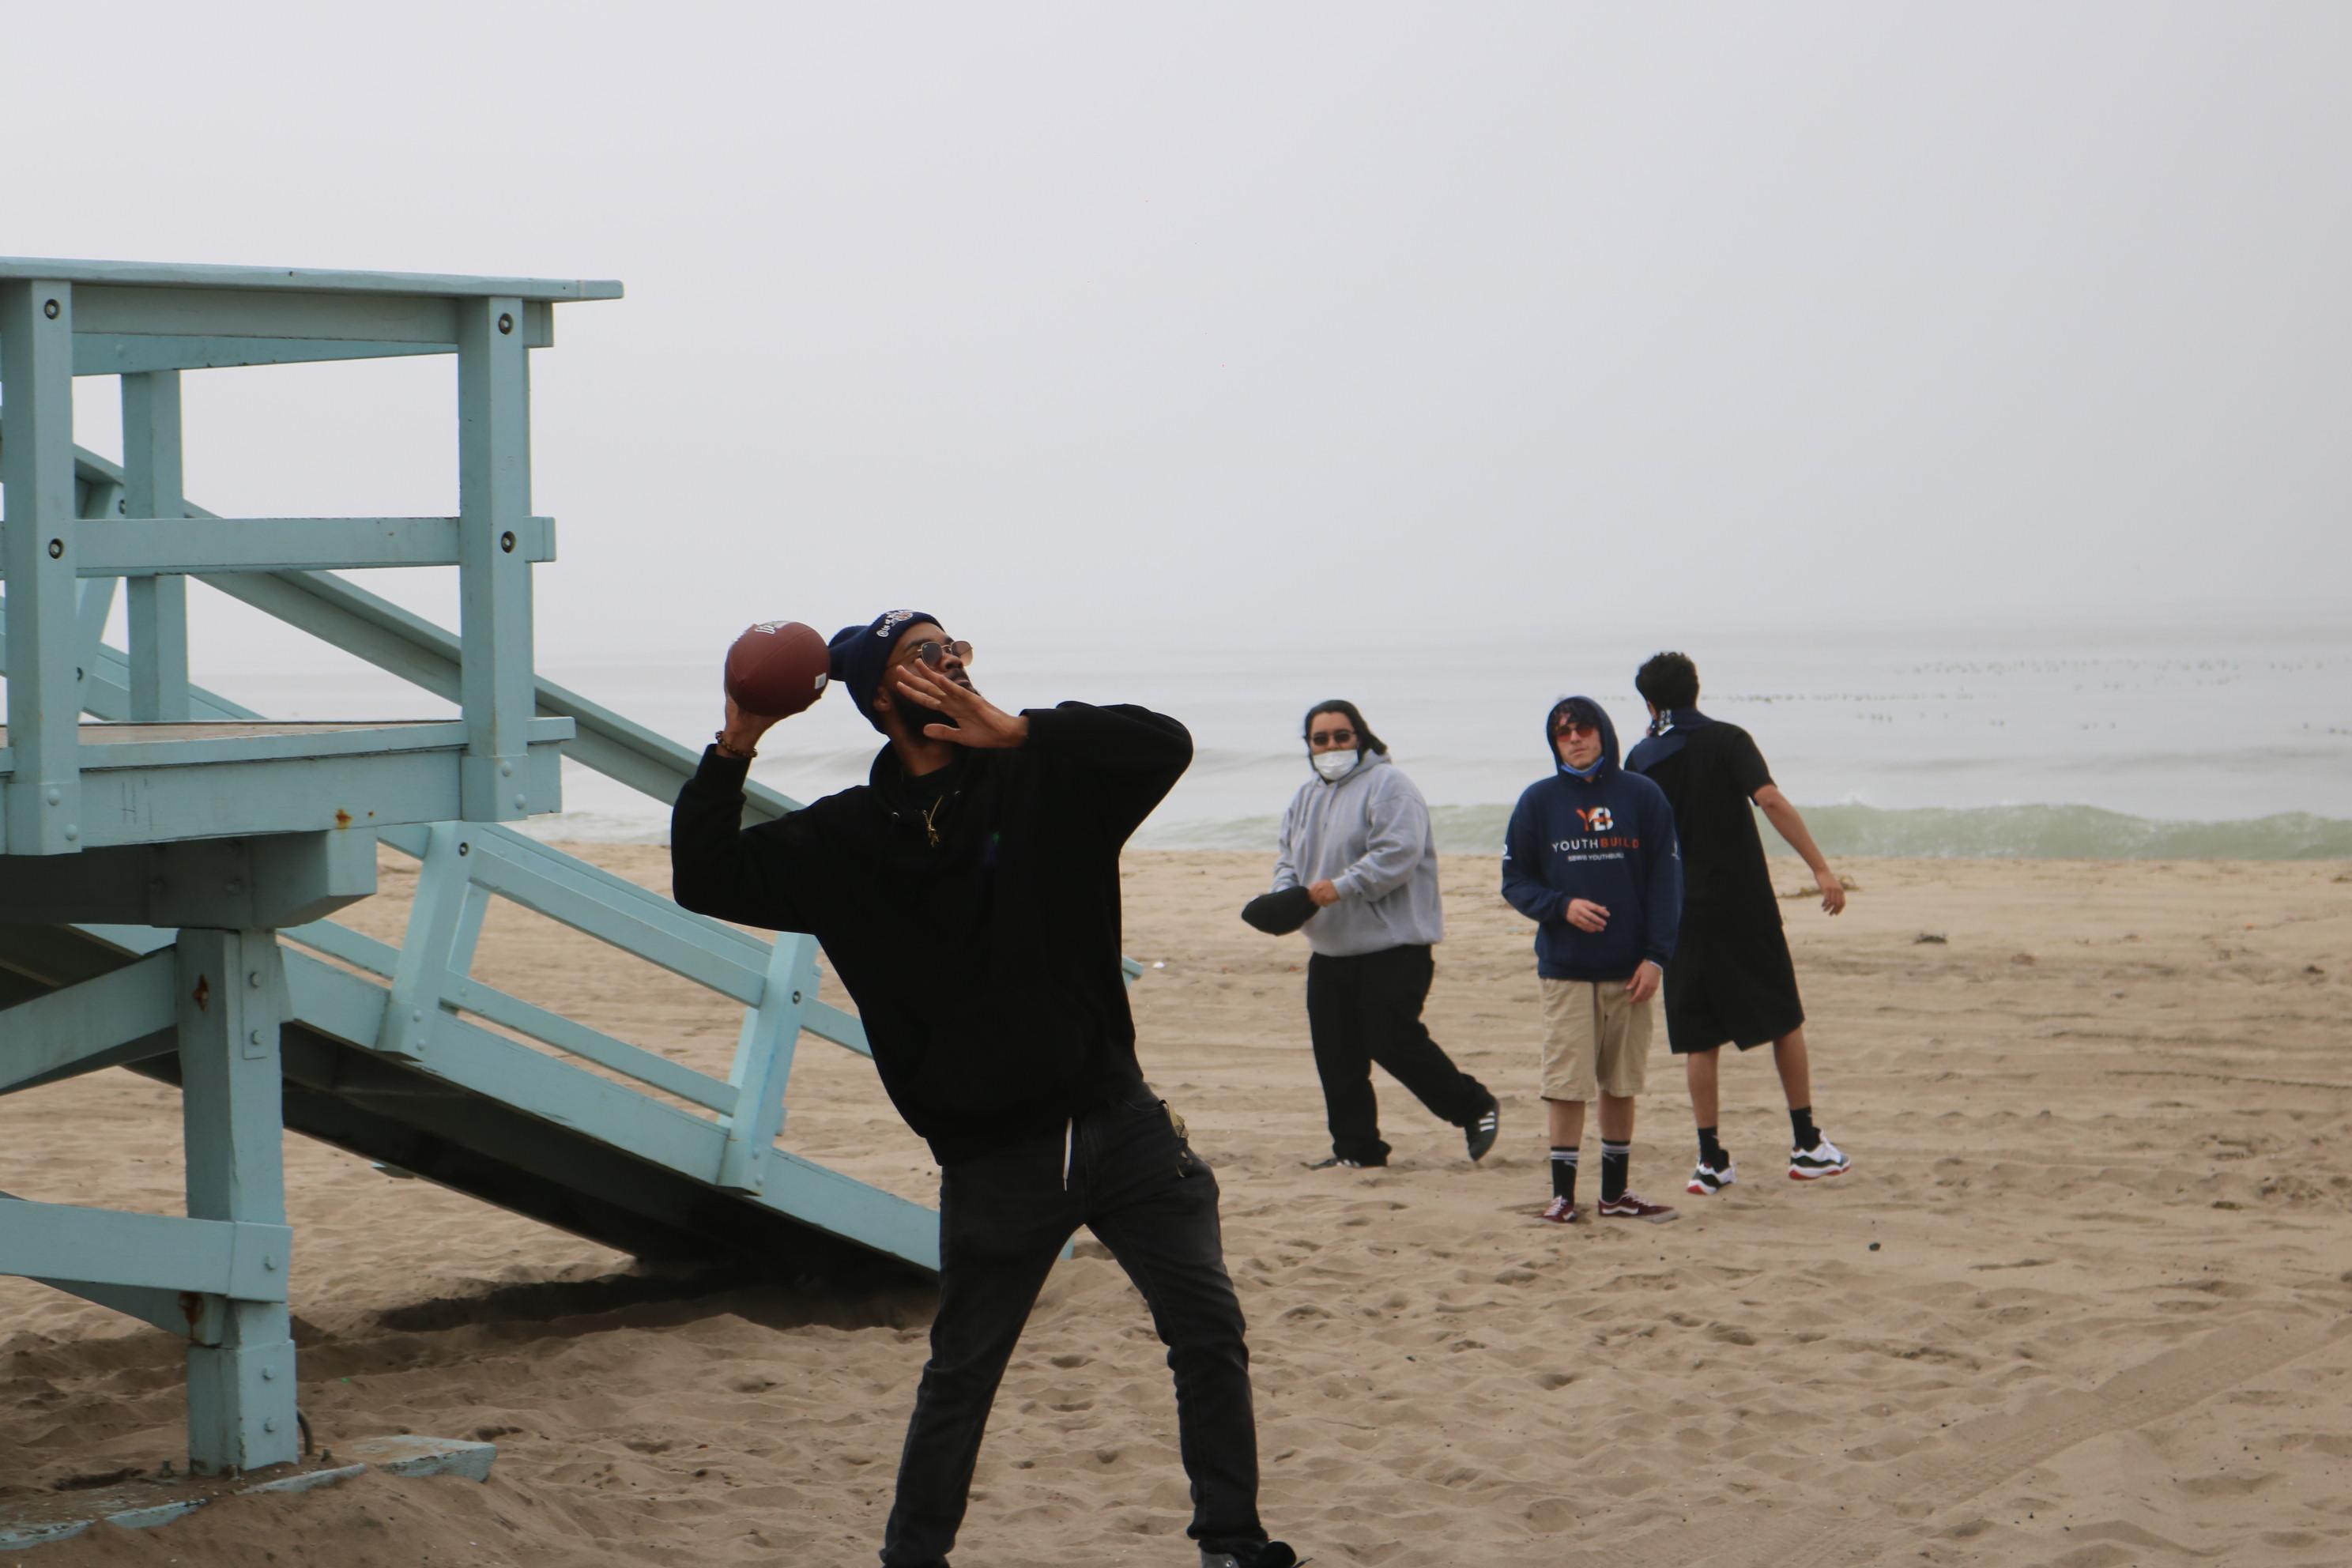 A Lennox student gets ready to throw a football on the beach